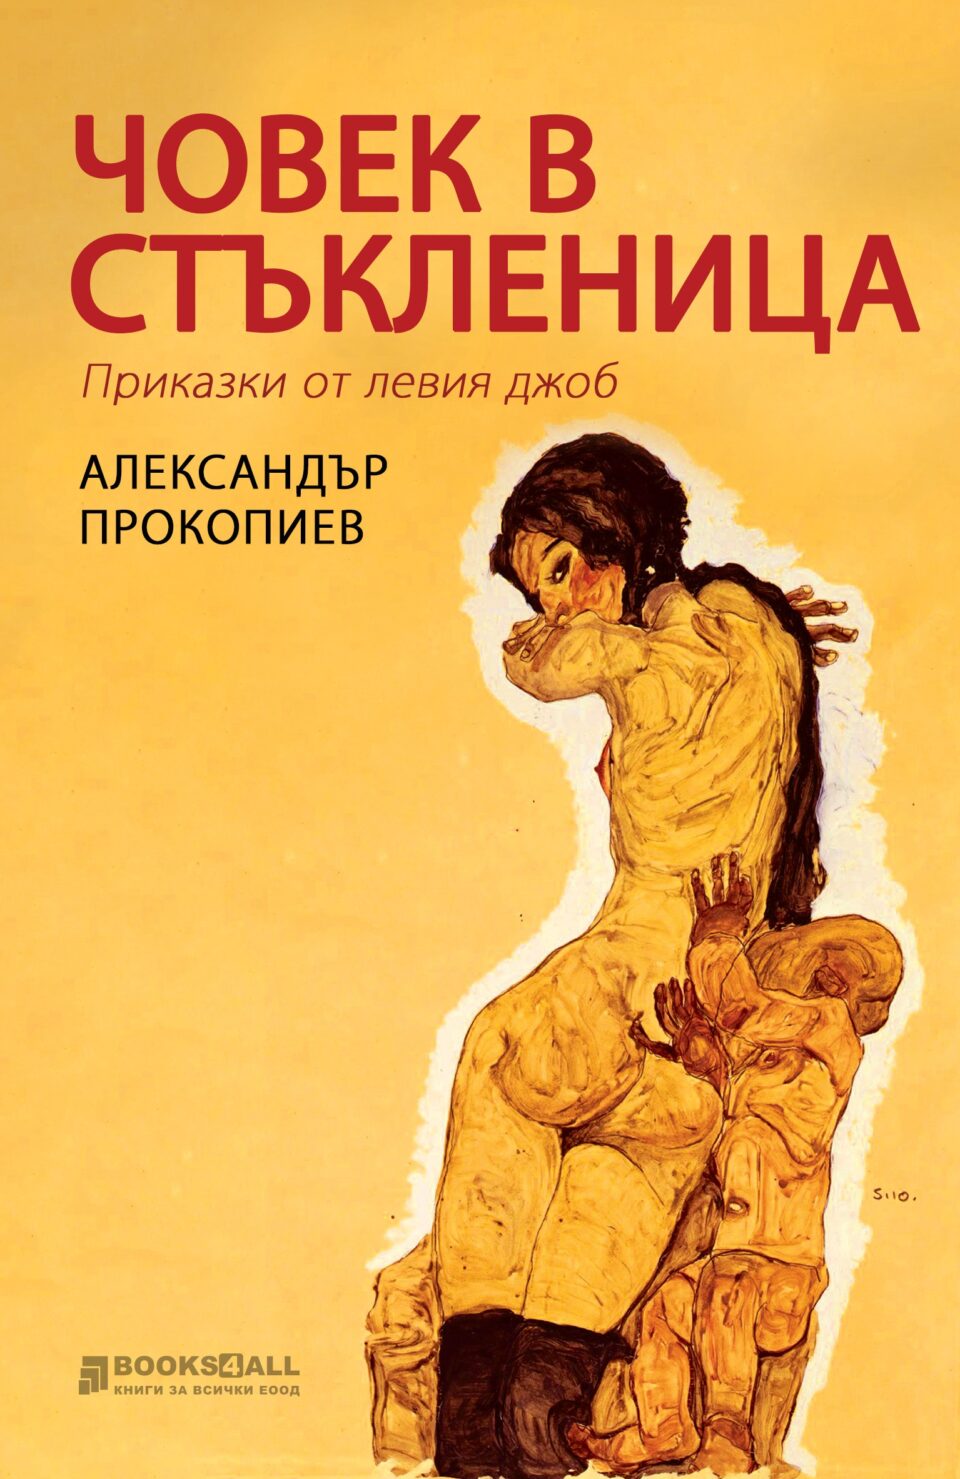 Збирката раскази „Човечулец“ на Александар Прокопиев објавена на бугарски